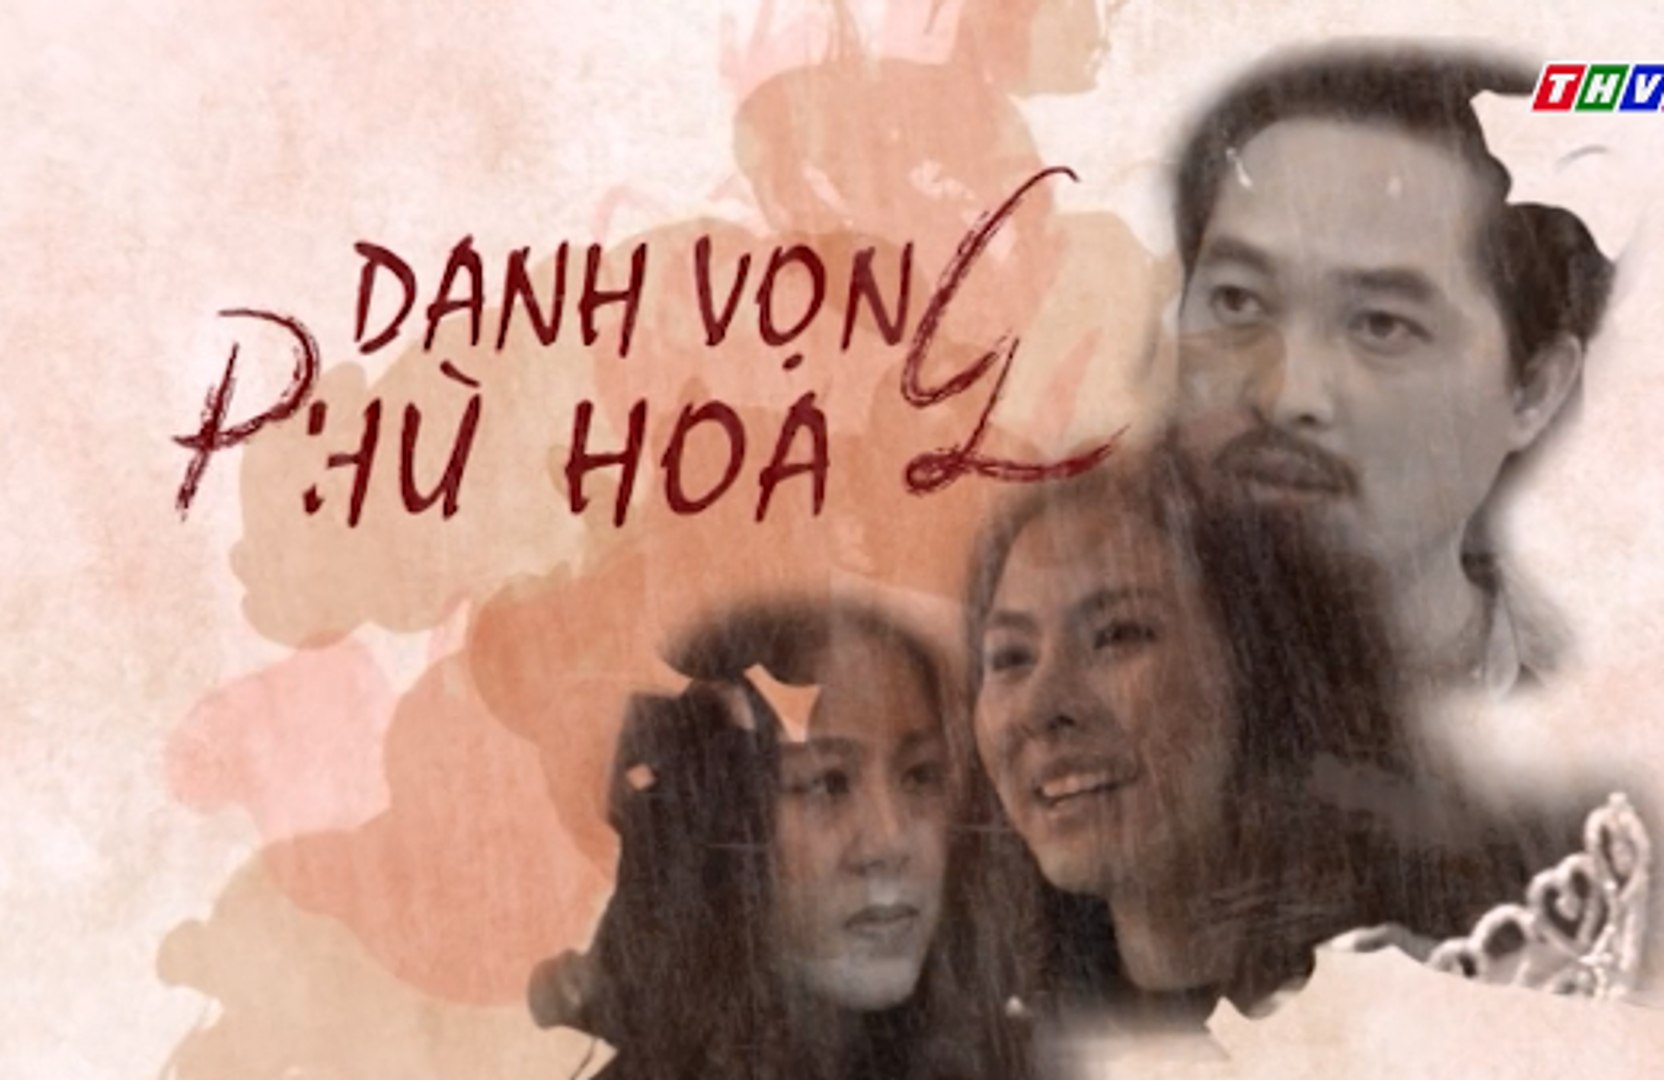 ⁣Danh vọng phù hoa Tập 18 - Phim Việt Nam